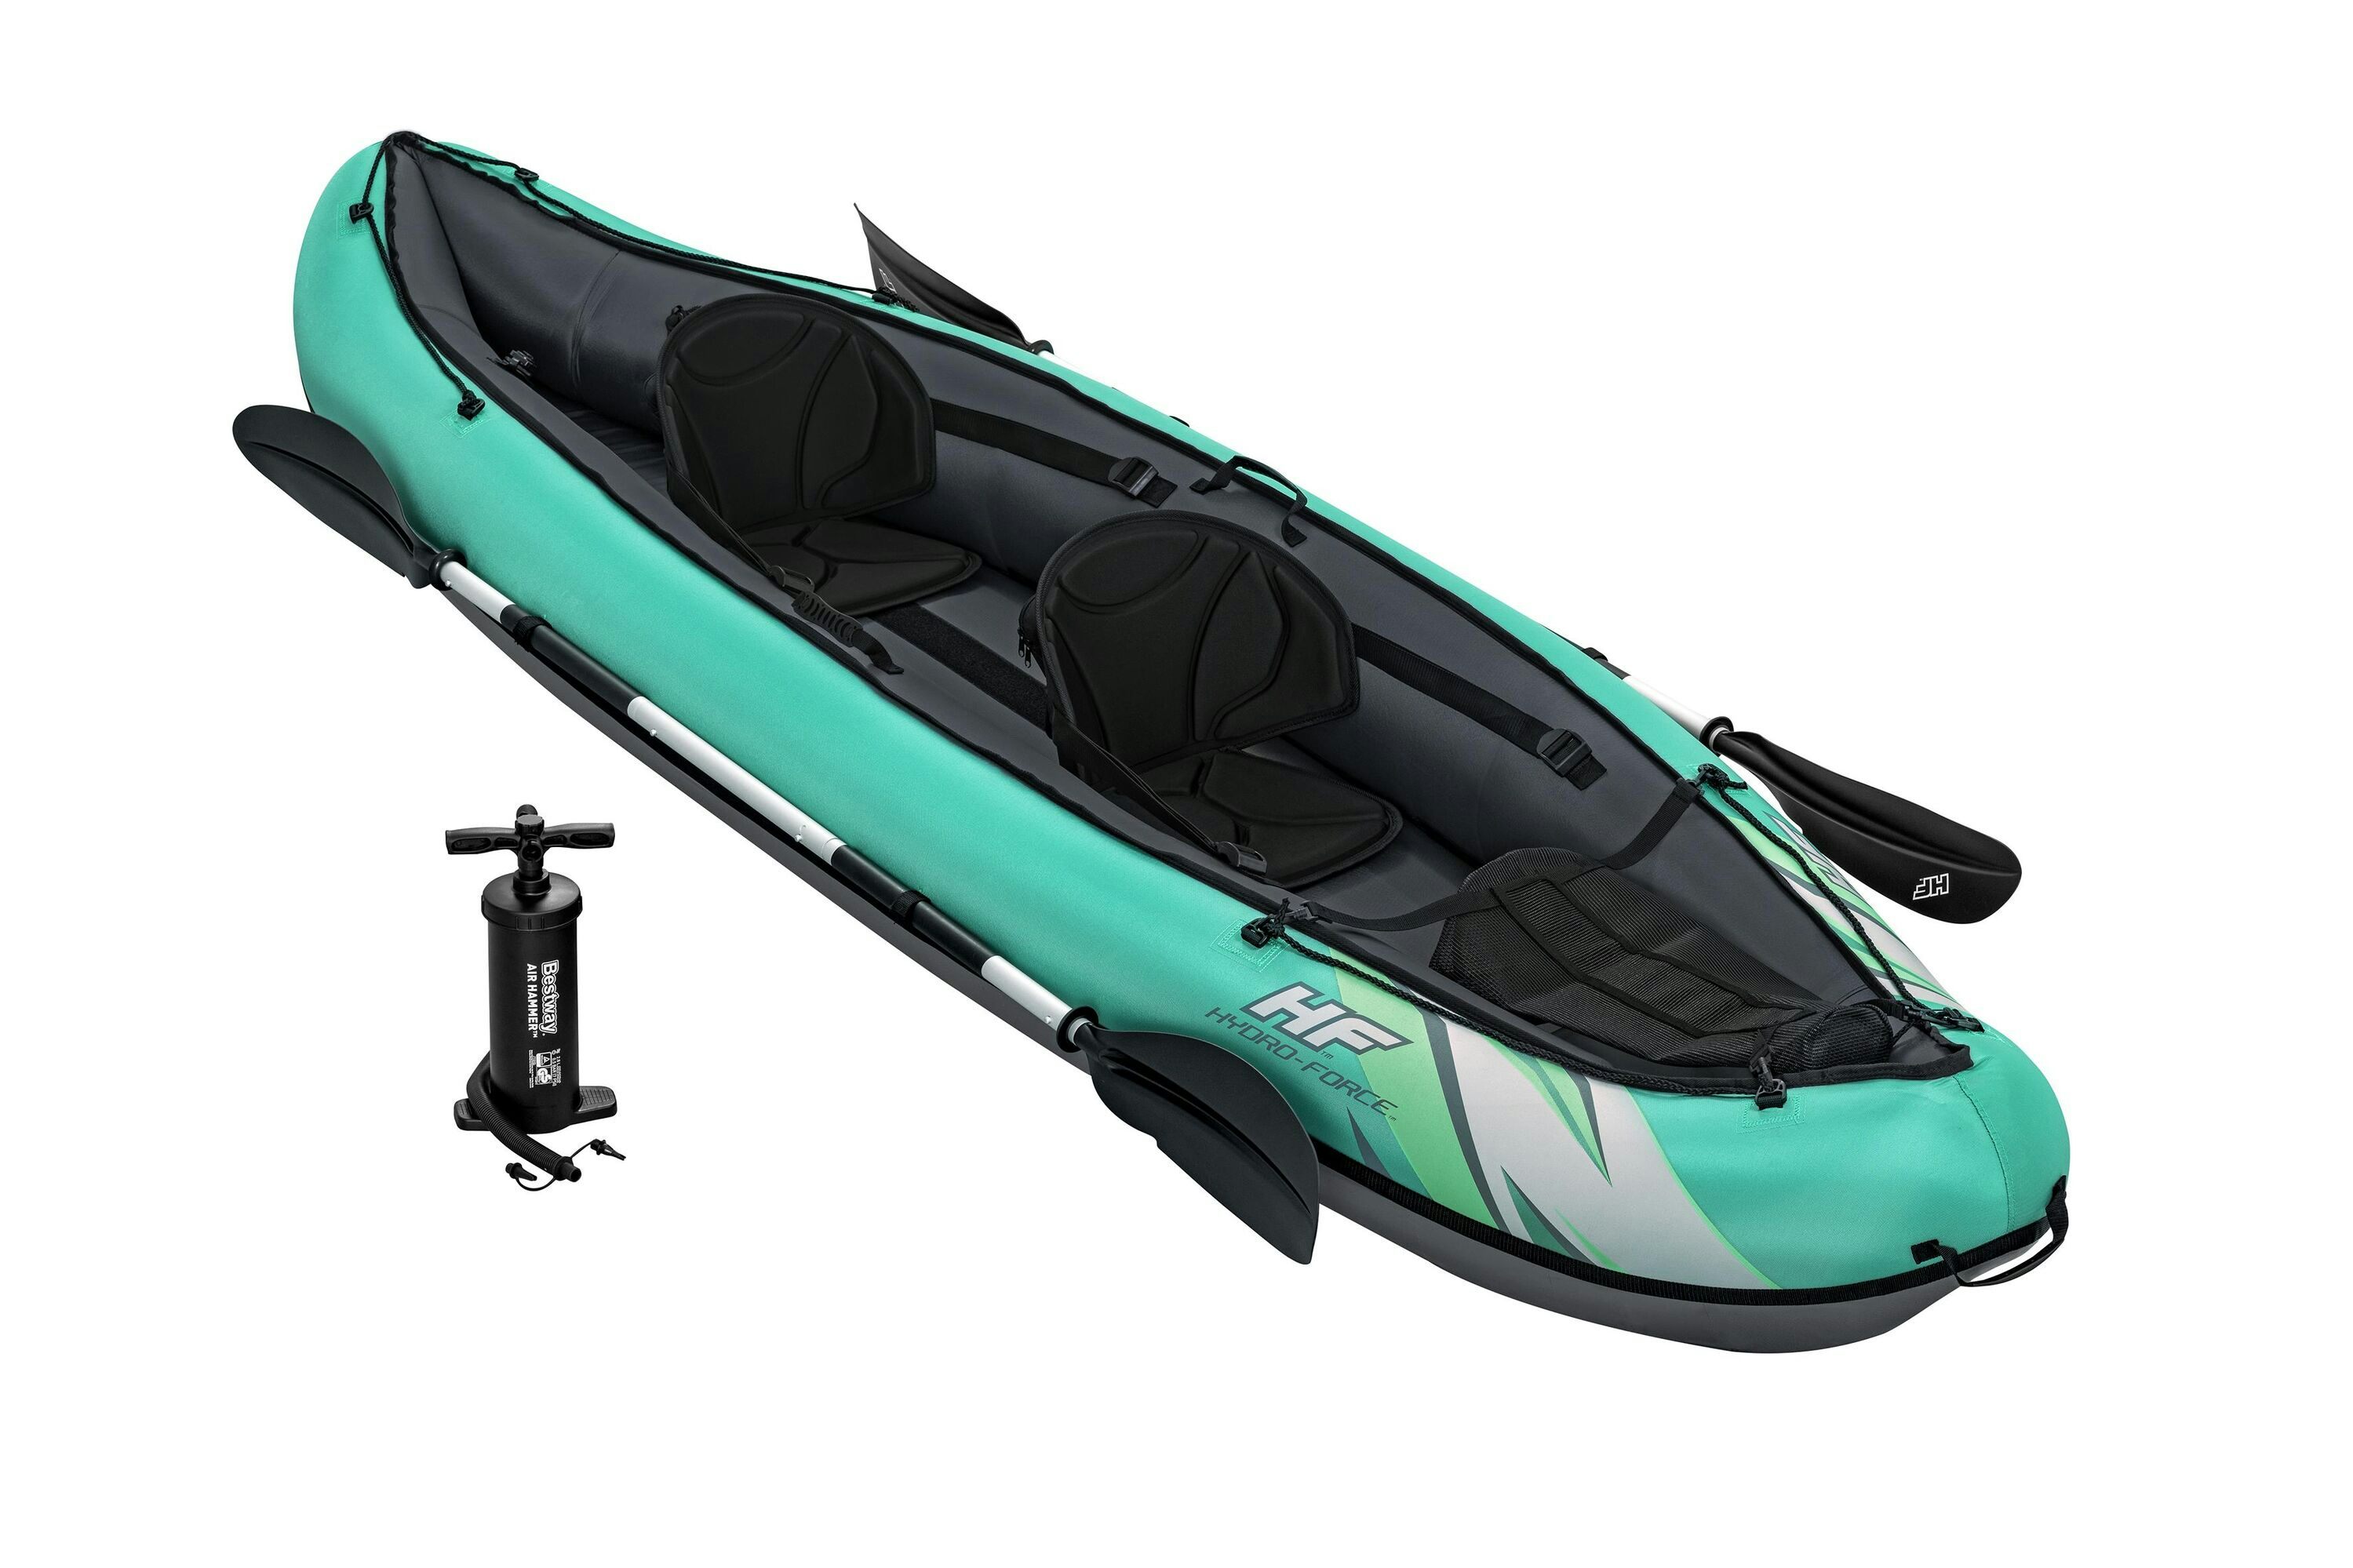 Sports d'eau Kayak gonflable Hydro-Force™ Ventura Elite X2 330 x 86 cm 2 adultes, pagaie, pompe Bestway 1